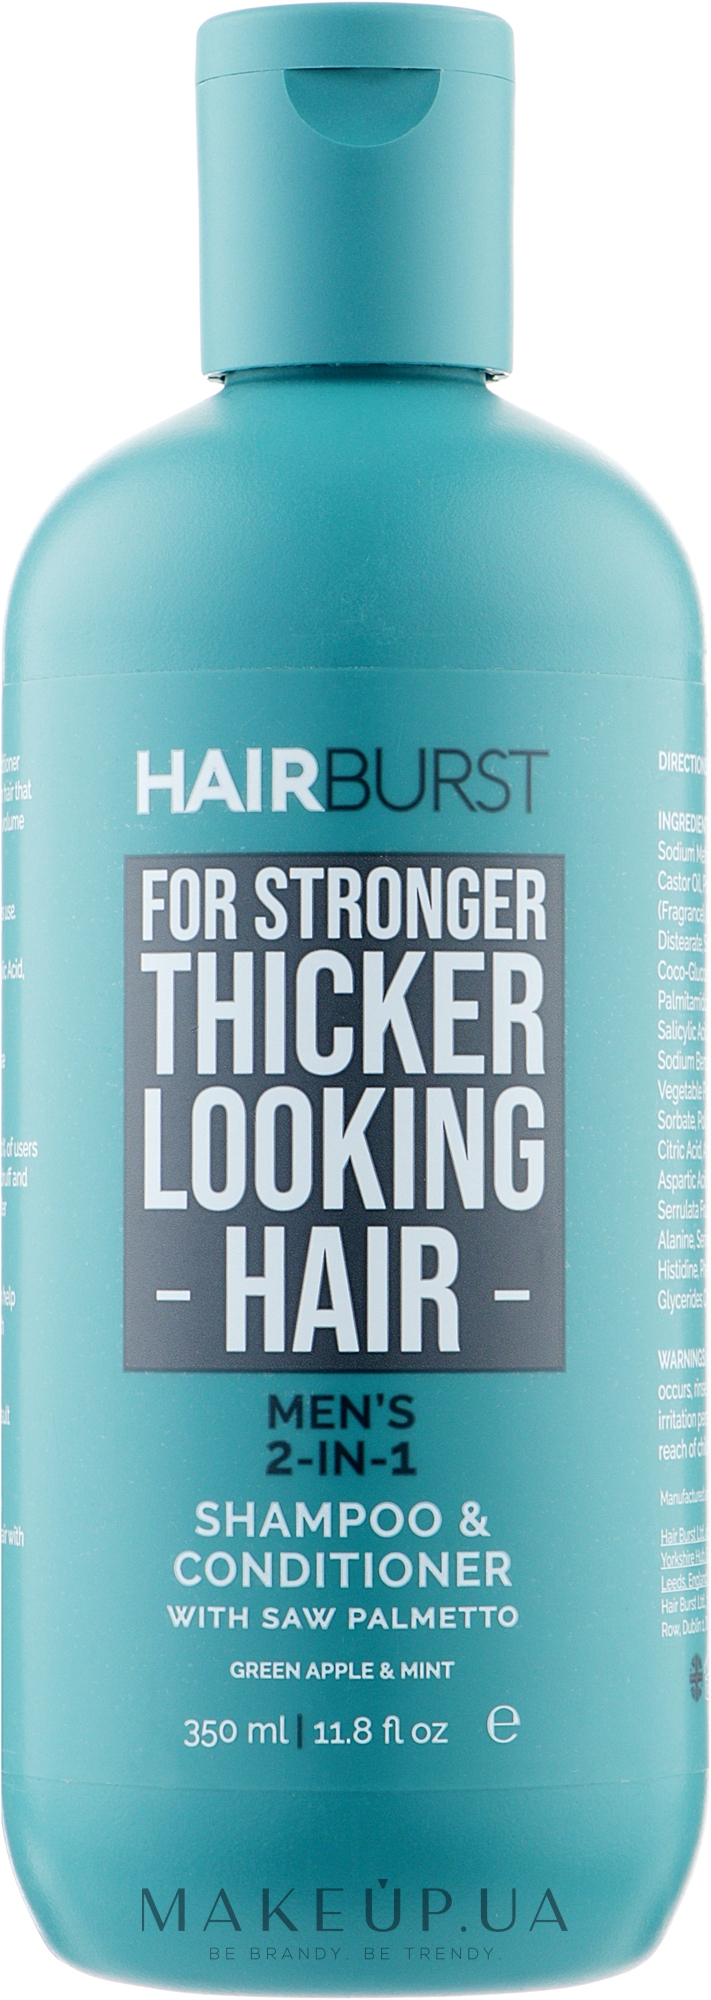 Шампунь і кондиціонер для чоловіків 2 в 1 - Hairburst Men's 2-In-1 Shampoo & Conditioner — фото 350ml